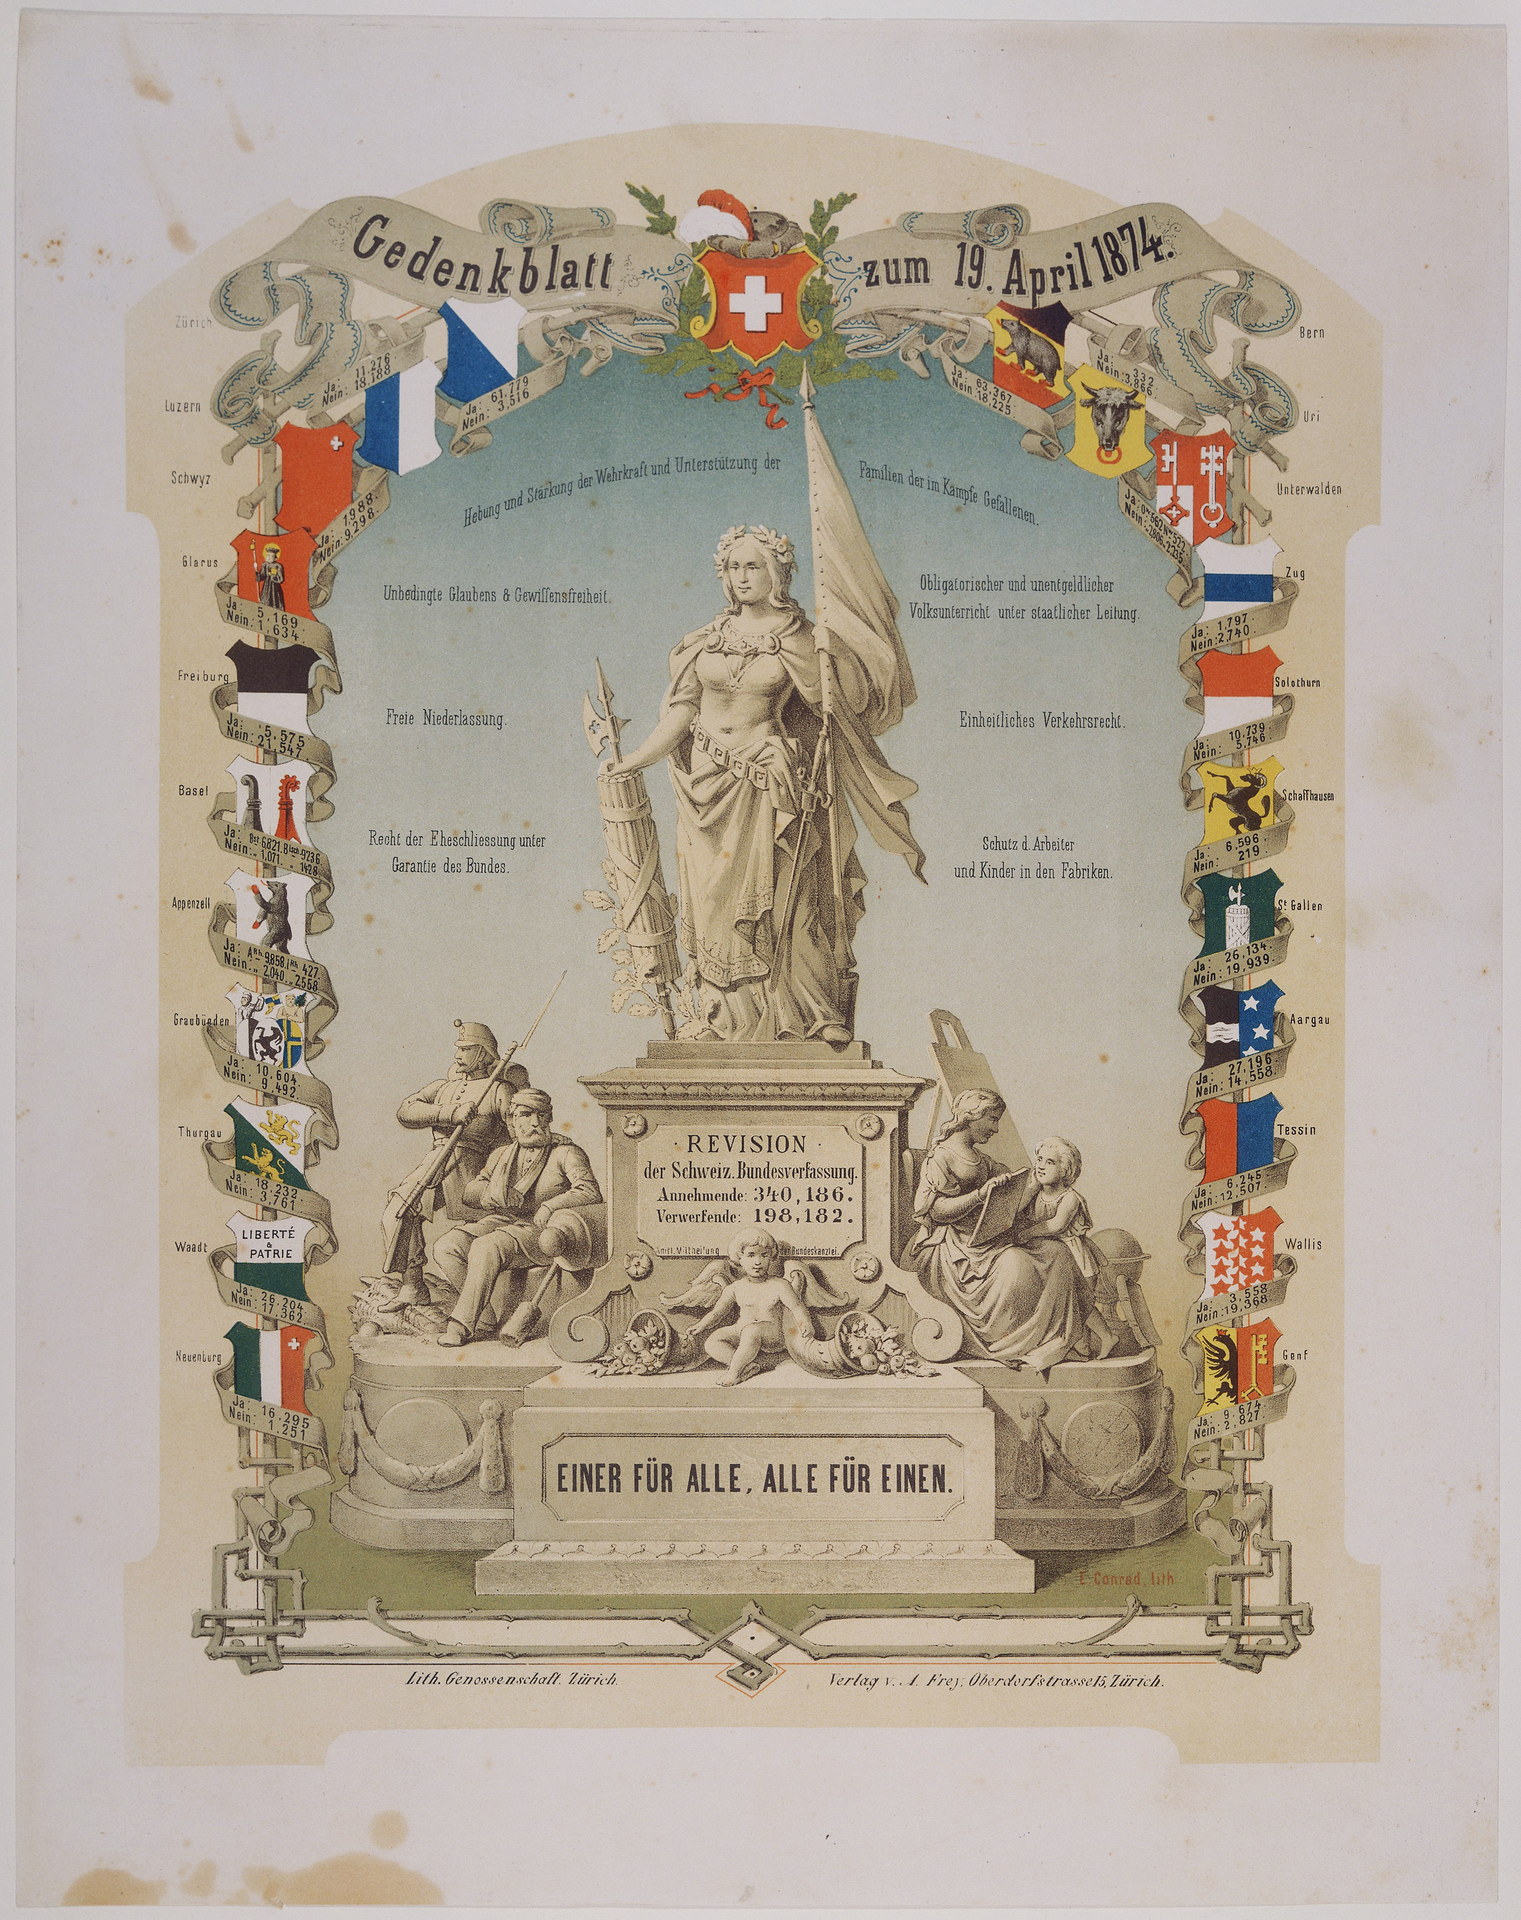 Gedenkblatt: Revision der Schweizerischen Bundesverfassung vom 19. April 1874/